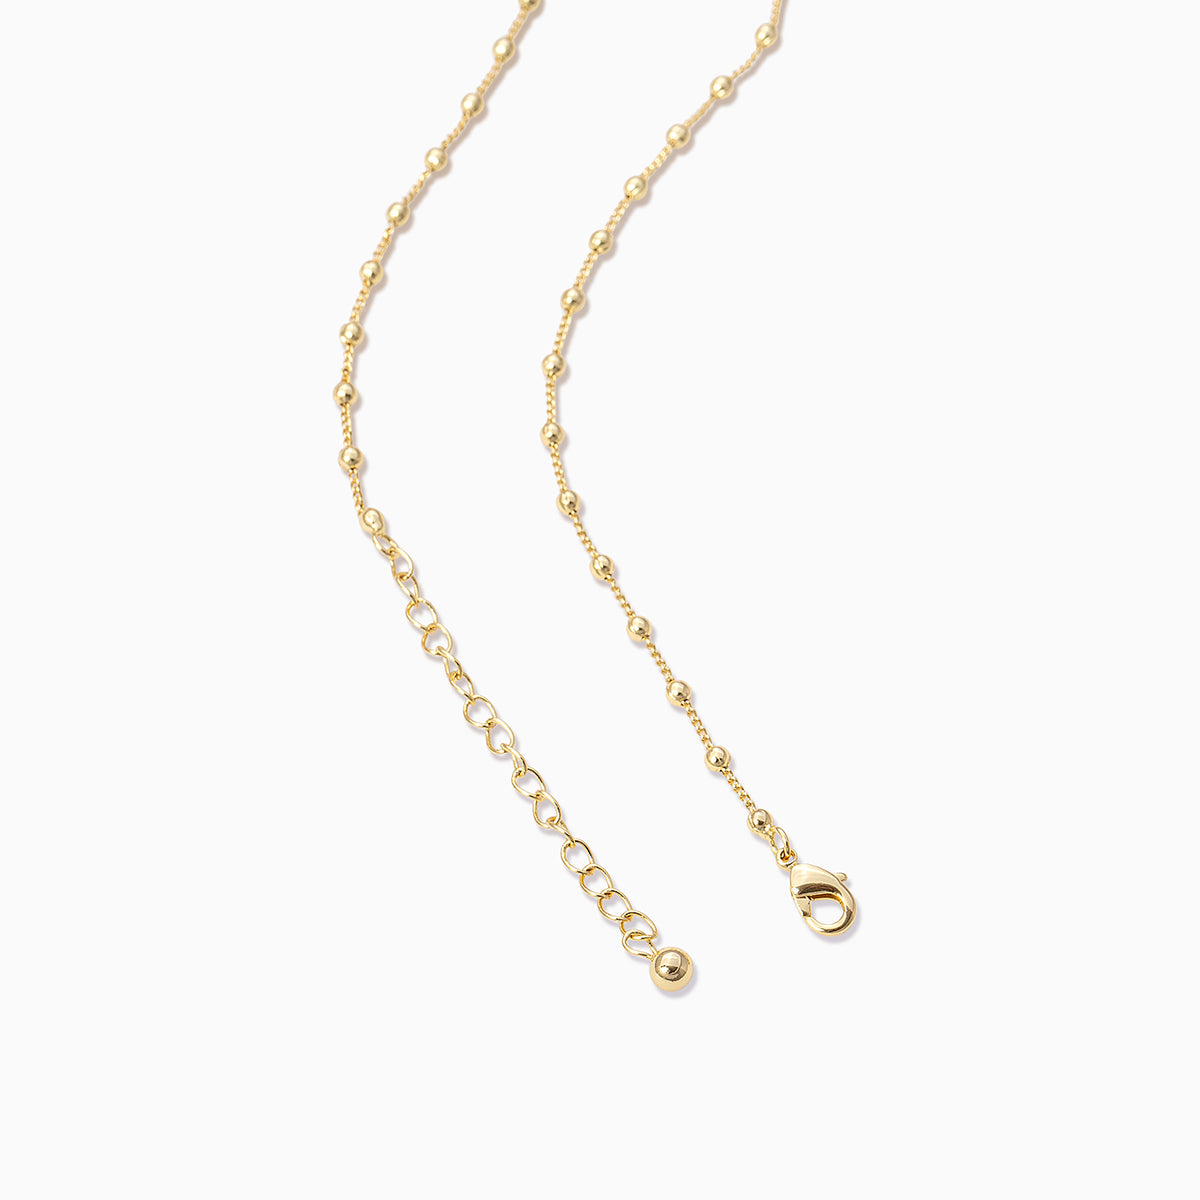 Sur Necklace | Gold | Product Detail Image 2 | Uncommon James